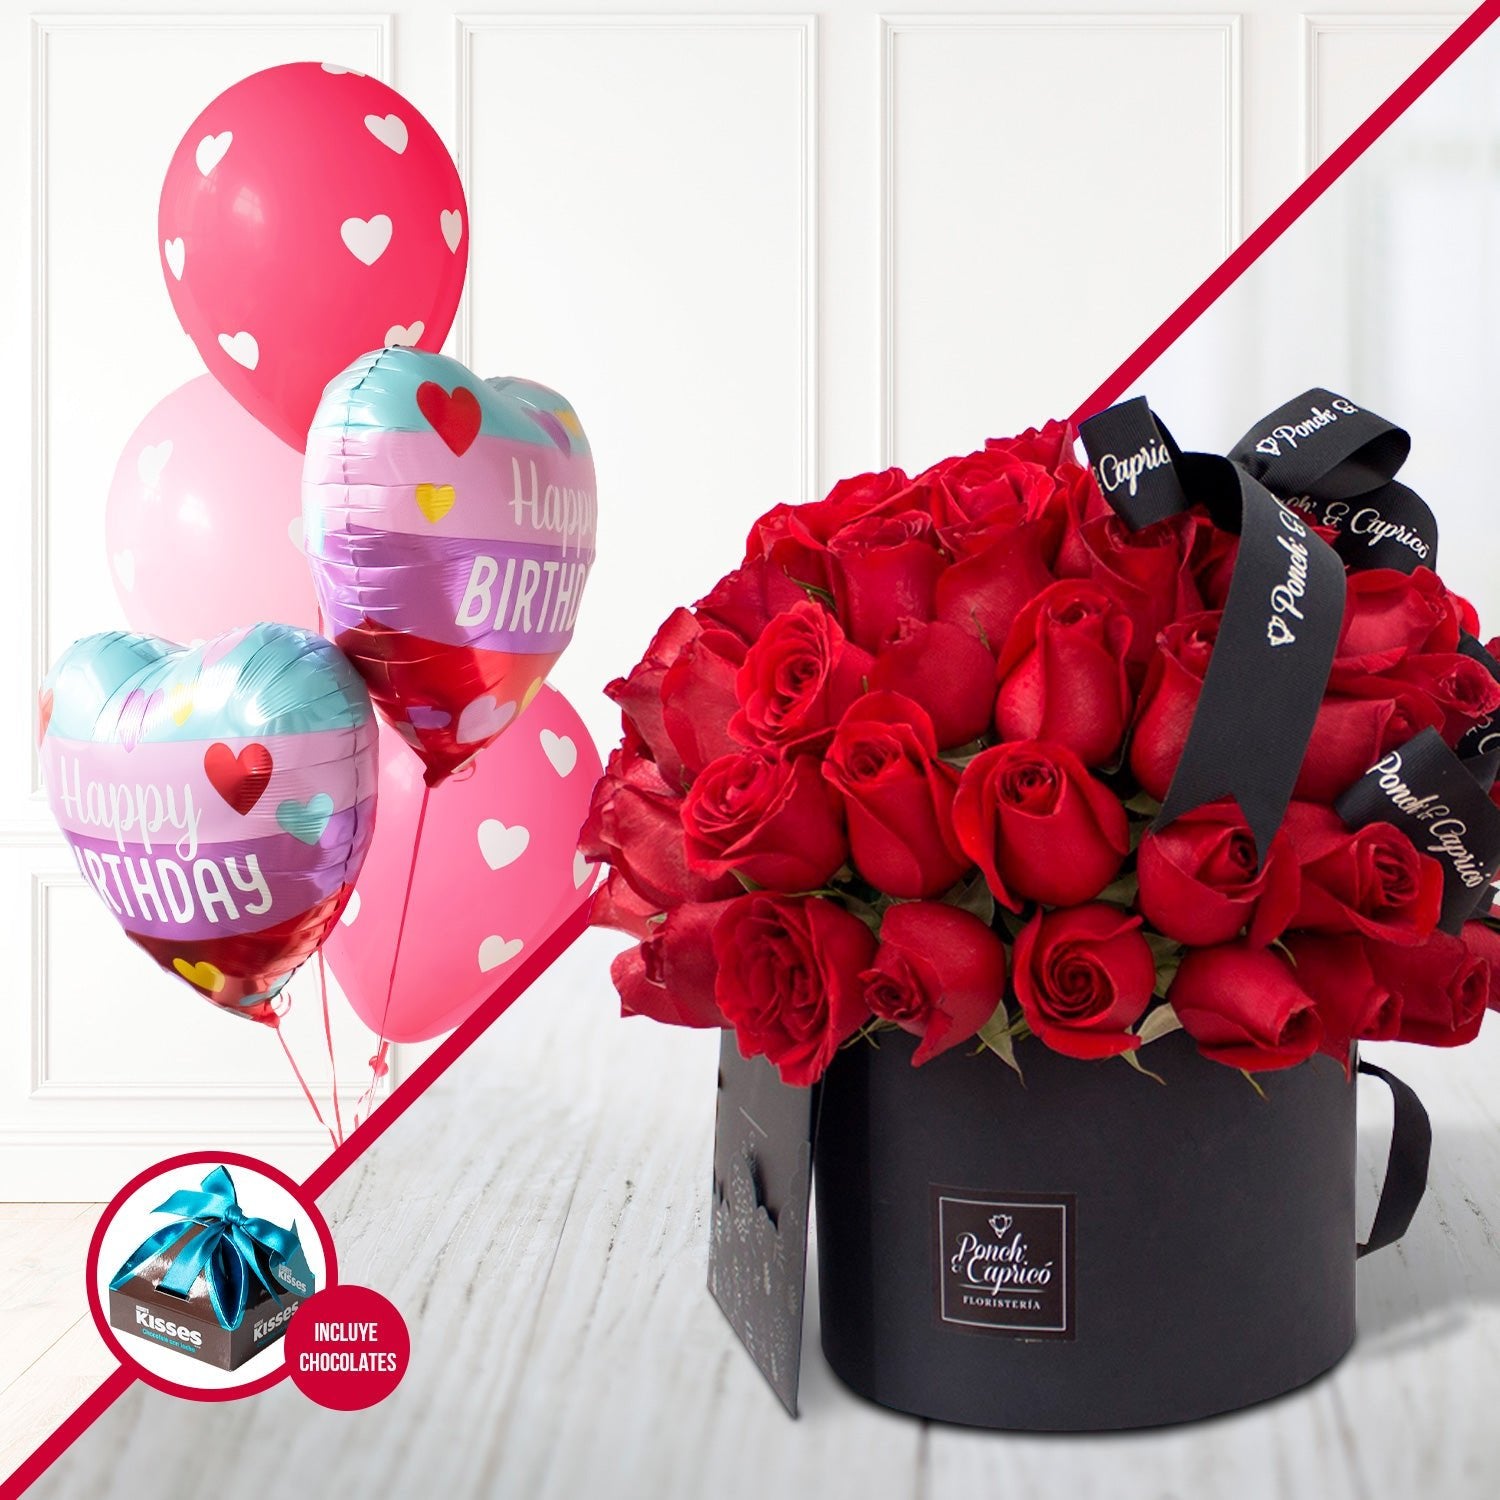 60 Rosas Rojas en Caja Domo + Bouquet de Globos Happy Birthday Love -SET019- | Globos y Regalos Teleglobos.com.mx.